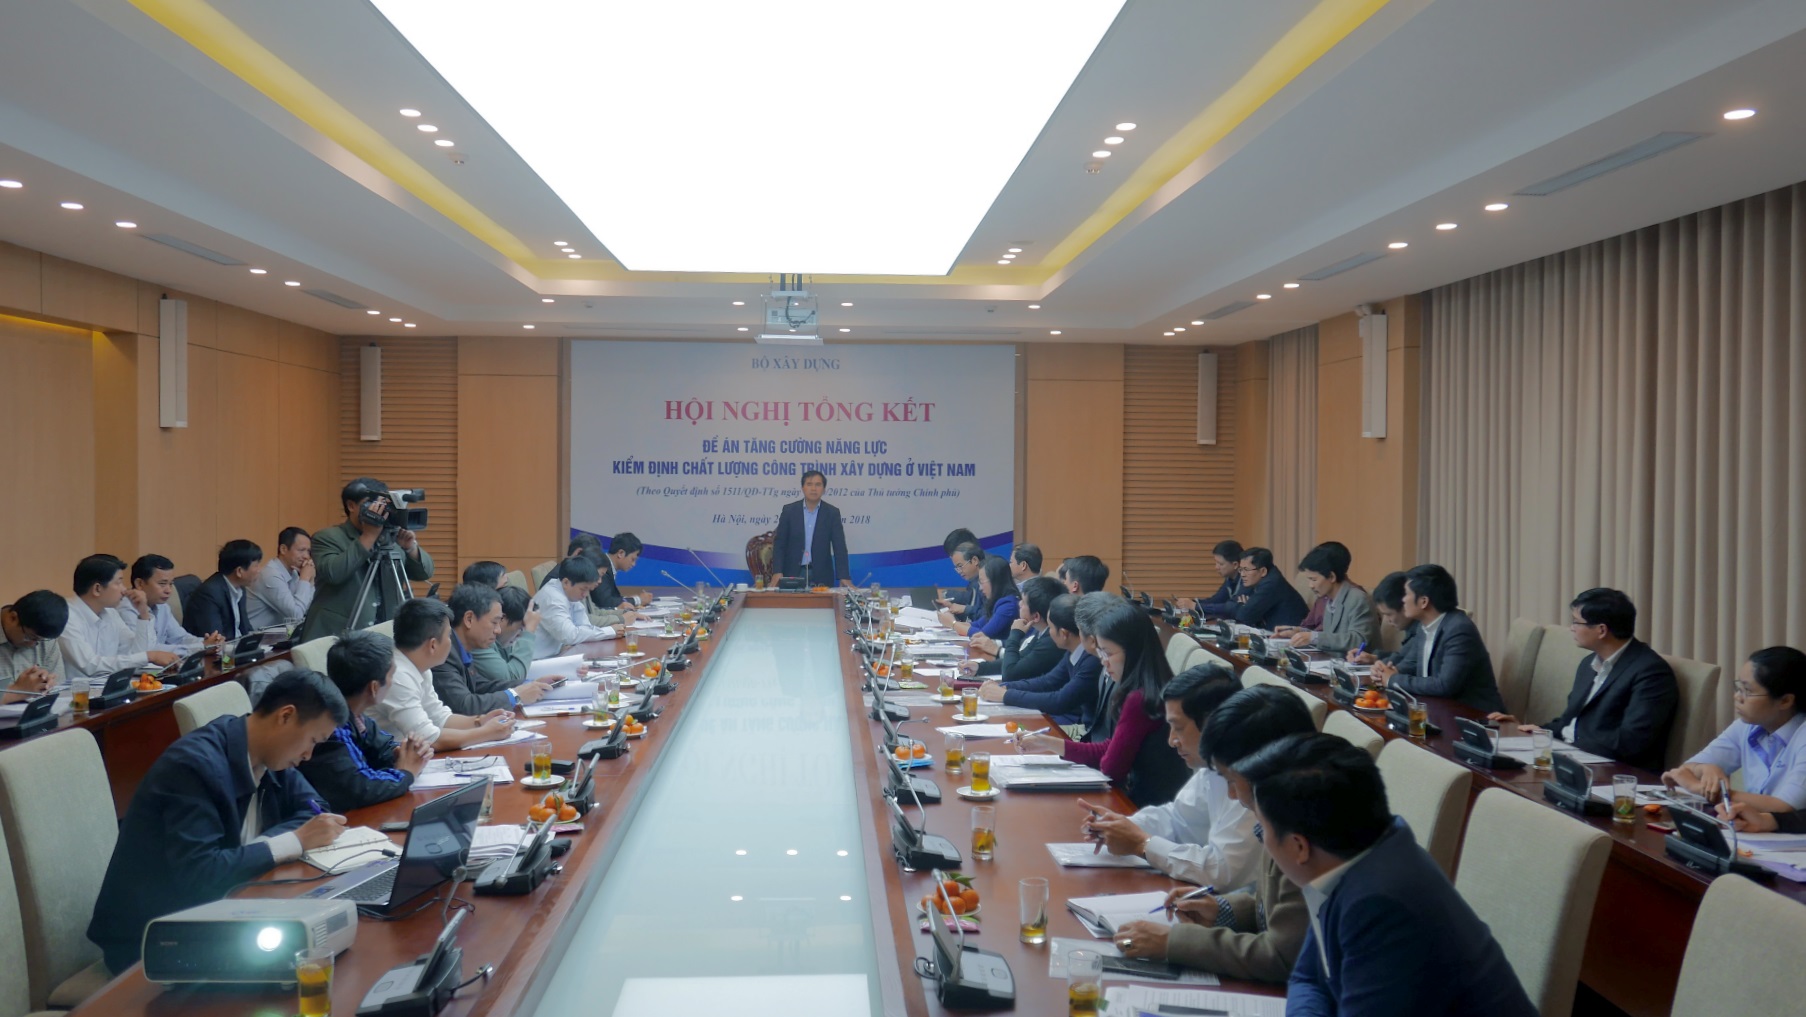 Hội nghị Tổng kết Đề án “Tăng cường năng lực kiểm định chất lượng công trình xây dựng ở Việt Nam”